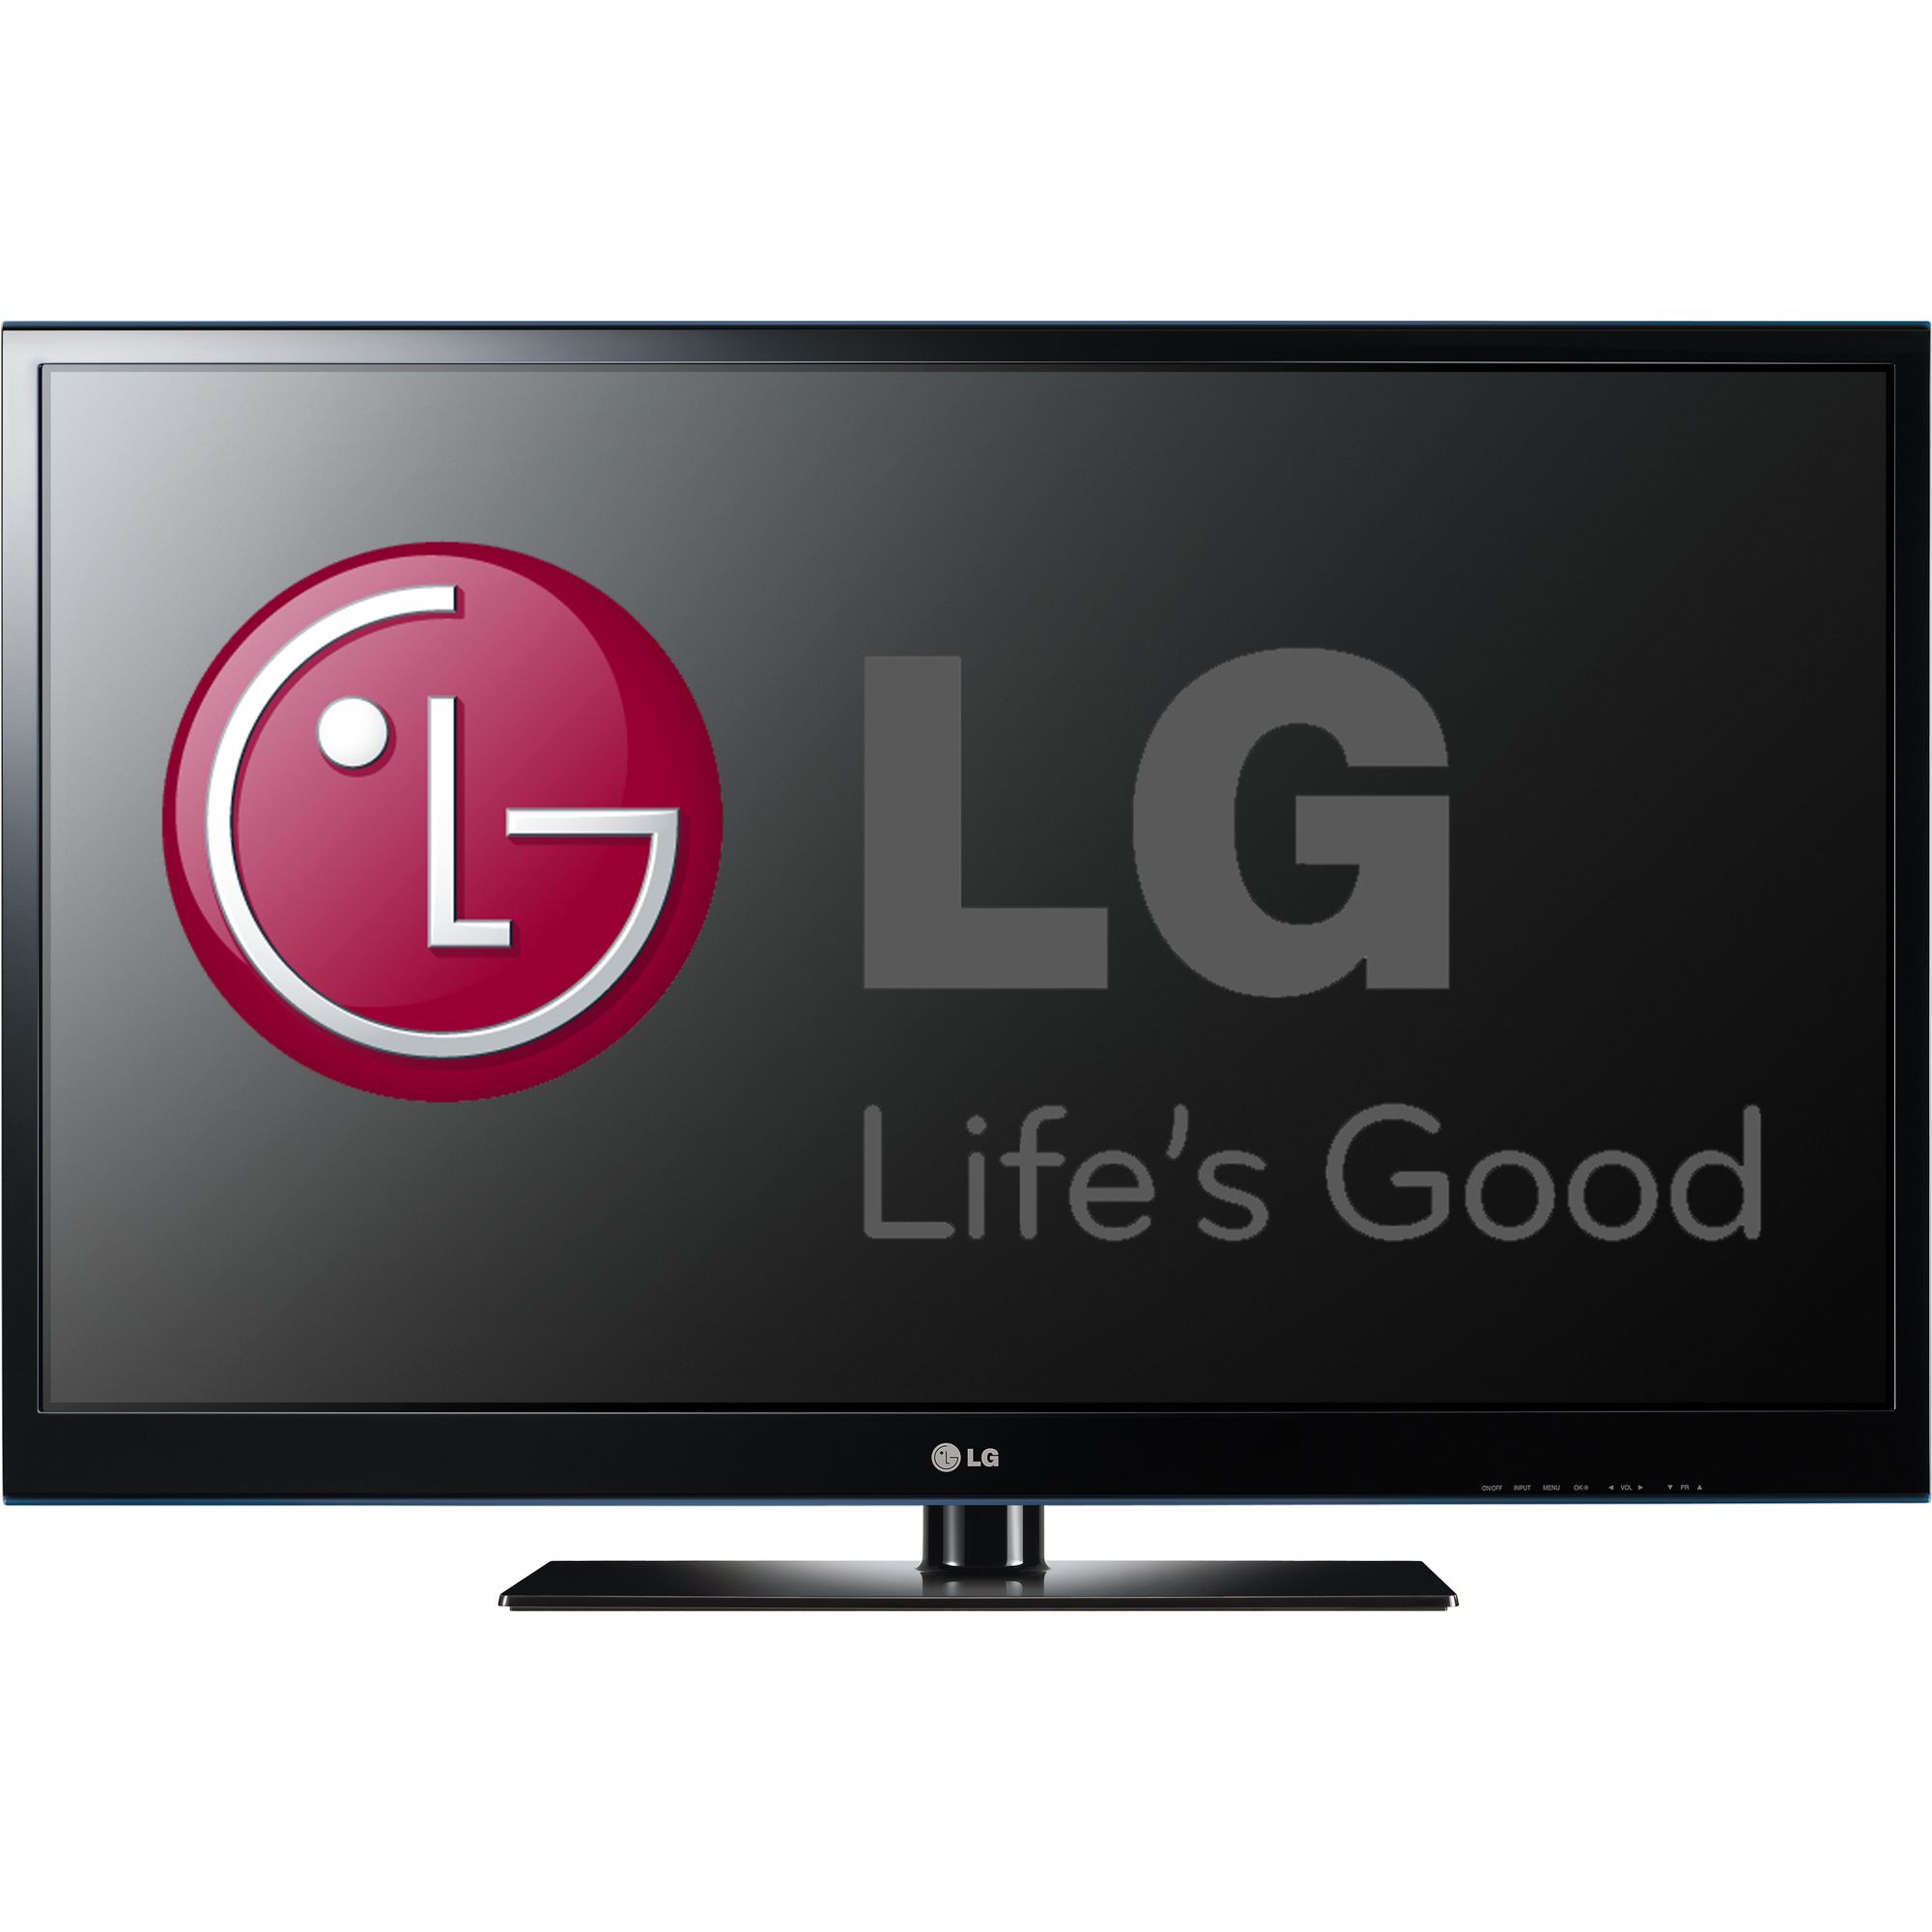 Телевизоры lg 2013 года. Телевизор LG 42 дюйма 2013 года. Телевизоры LG 2014 года LG Smart TV. Телевизоры LG 2013г. Телевизор в 2013 году выпуск LG 32 дюйм.